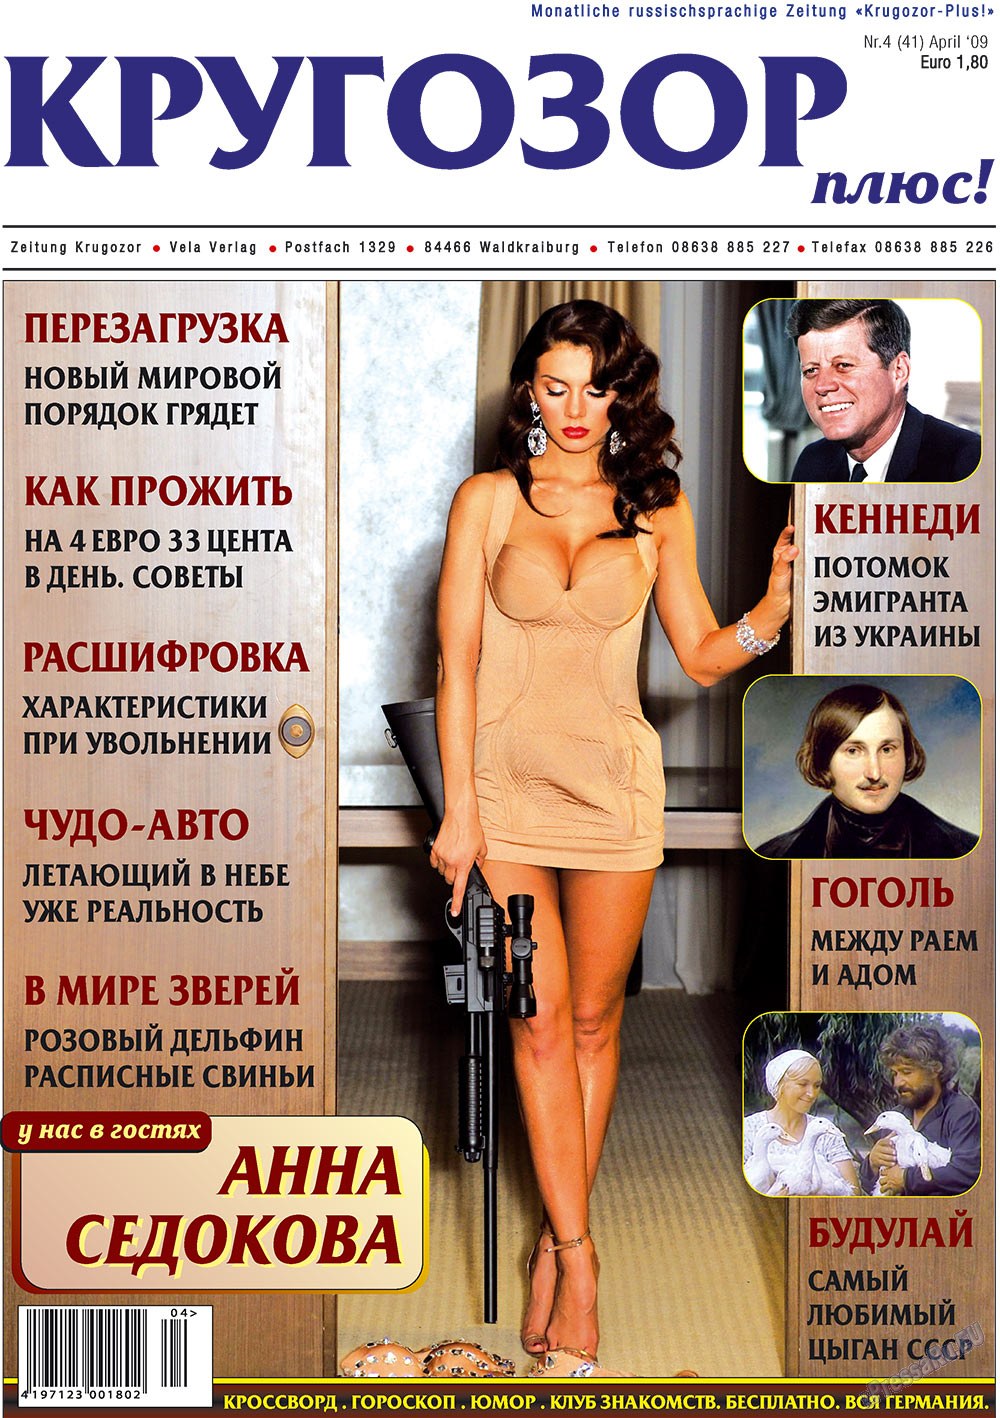 Кругозор плюс!, газета. 2009 №4 стр.1